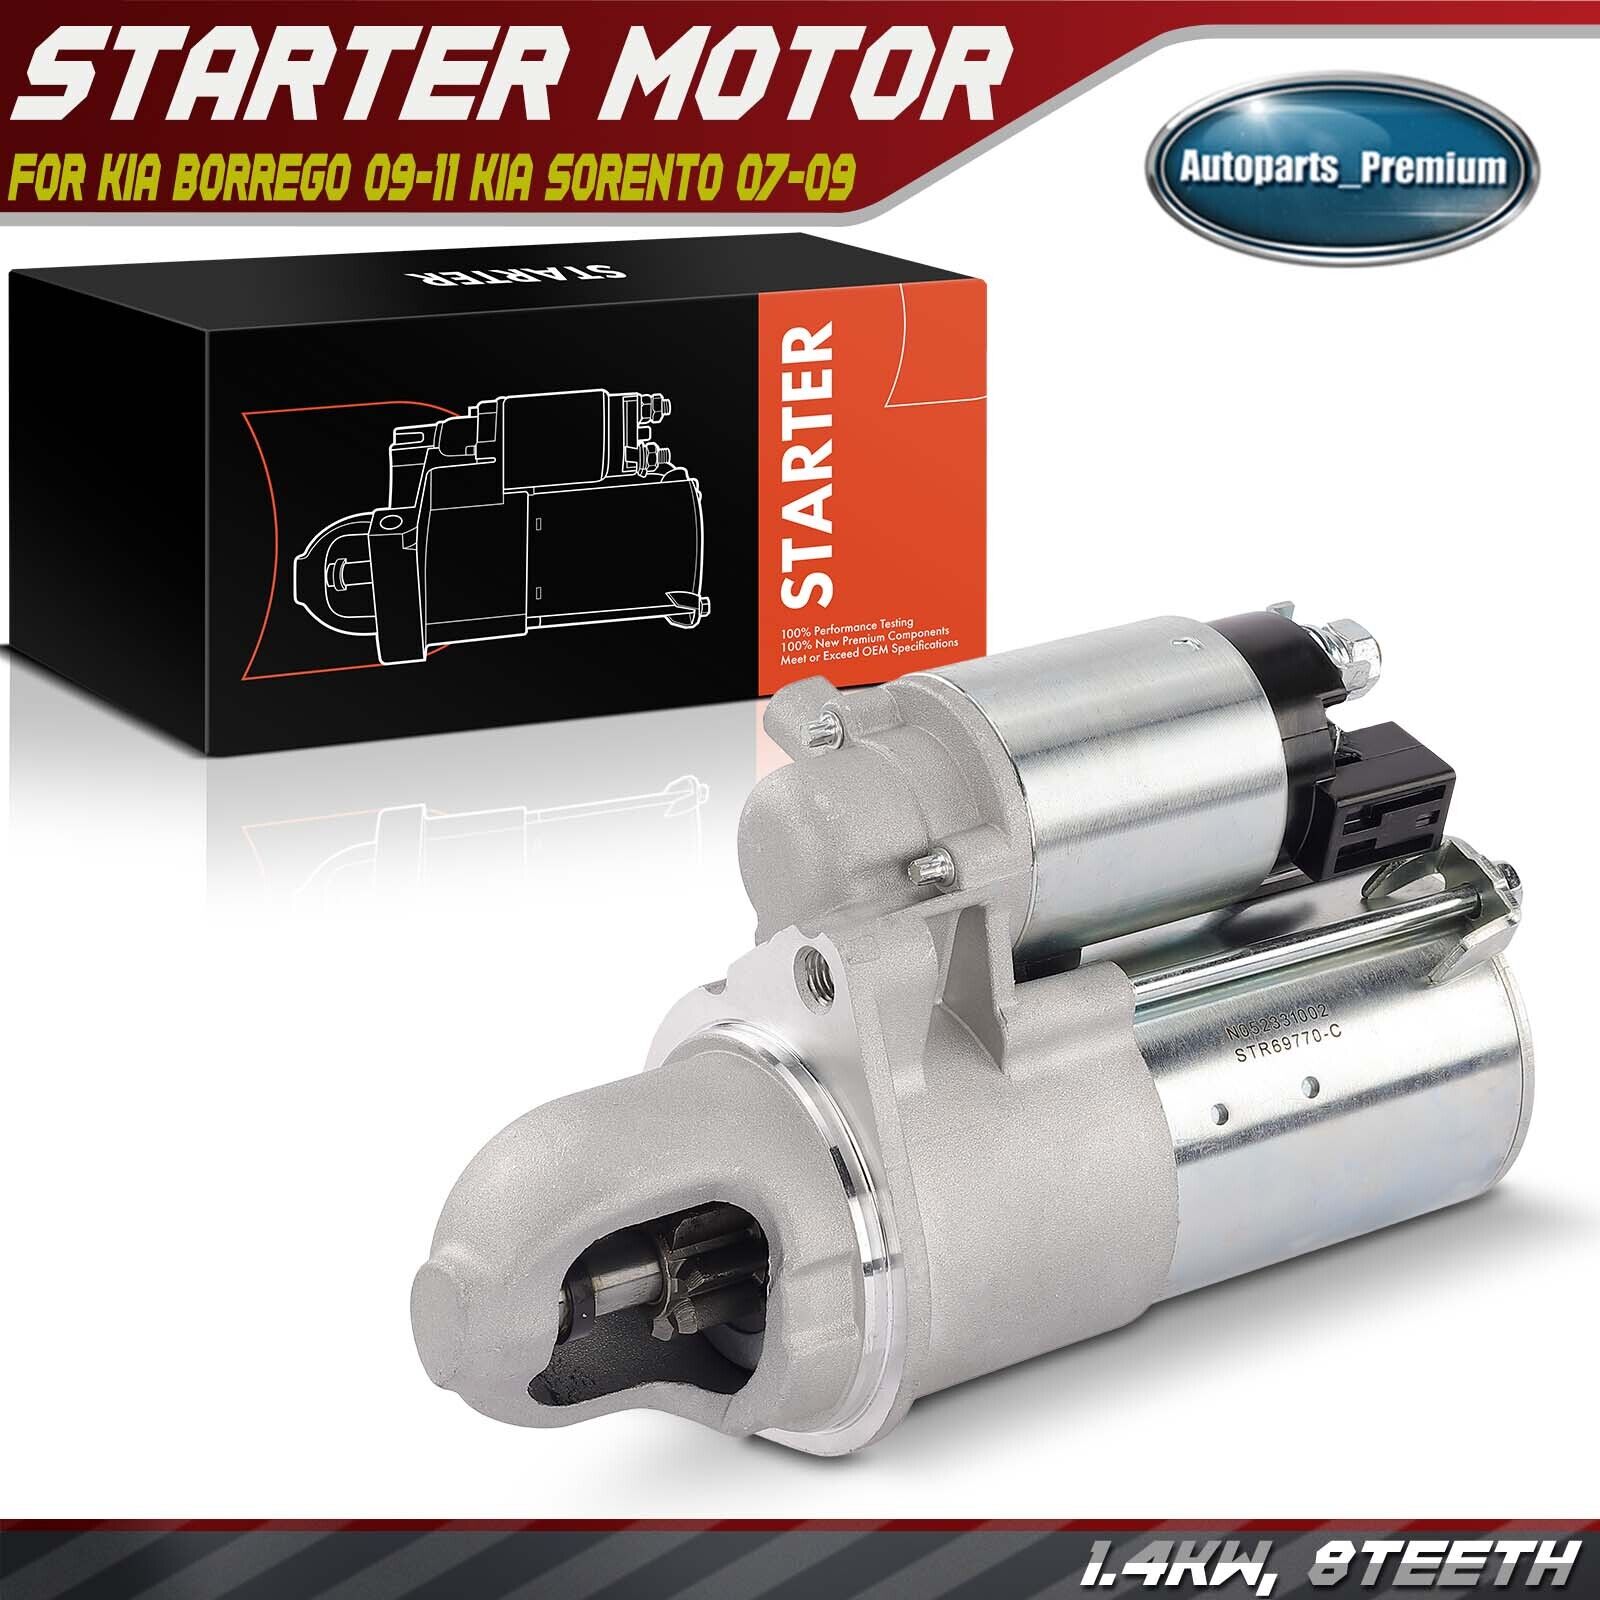 1x Starter Motor for Kia Borrego 2009-2011 Kia Sorento 2007-2009 1.4KW 12V CW 8T